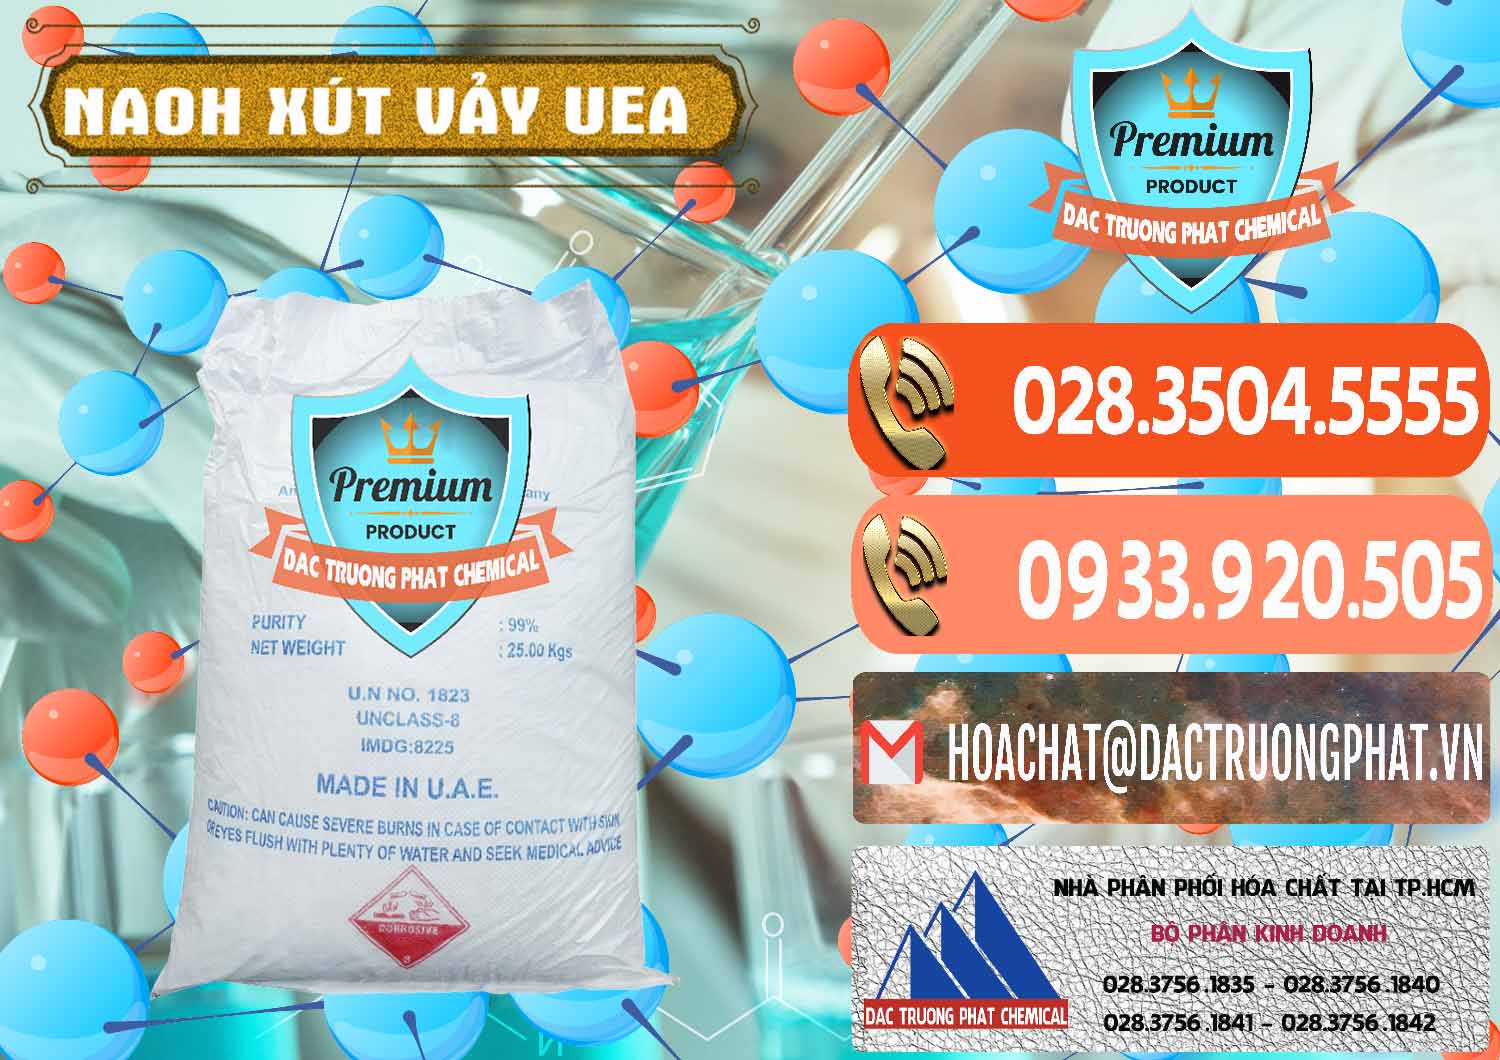 Nơi bán ( cung ứng ) Xút Vảy - NaOH Vảy UAE Iran - 0432 - Chuyên cung cấp _ kinh doanh hóa chất tại TP.HCM - hoachatmientay.com